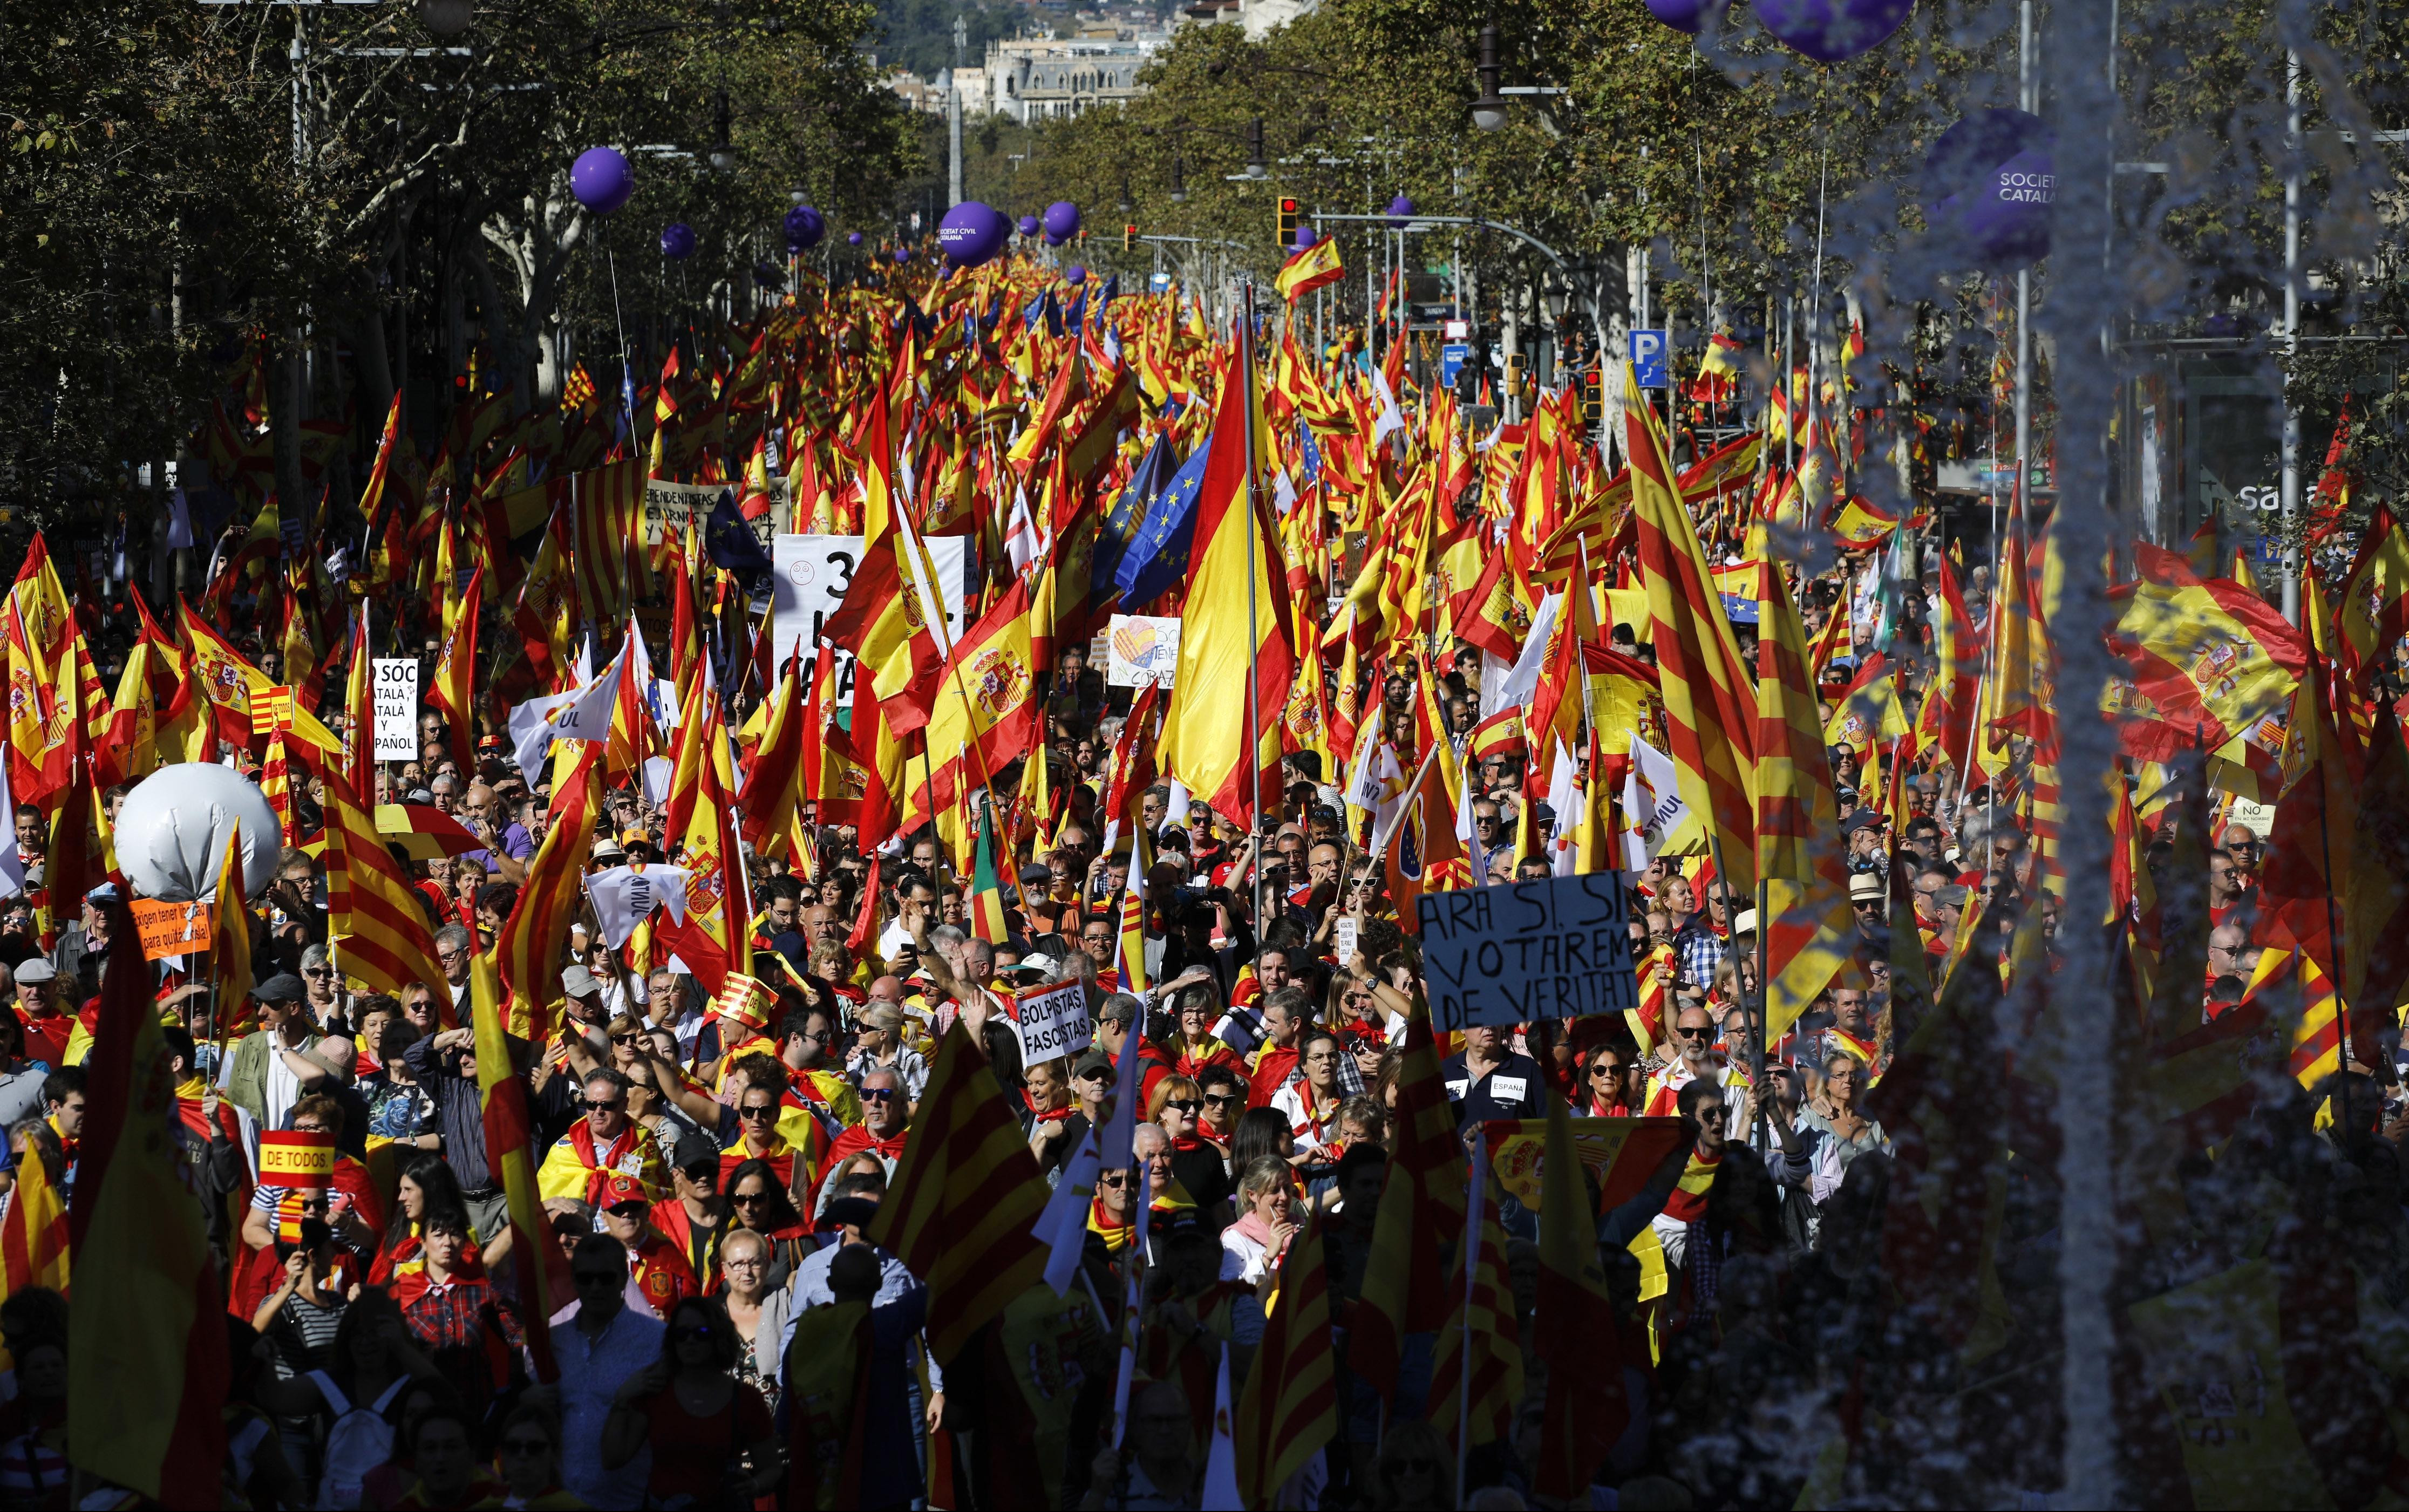 (FOTO) PUDŽDEMONA U ZATVOR, ŽIVELA ŠPANIJA! Stotine hiljada demonstranata na ulicama Barselone!